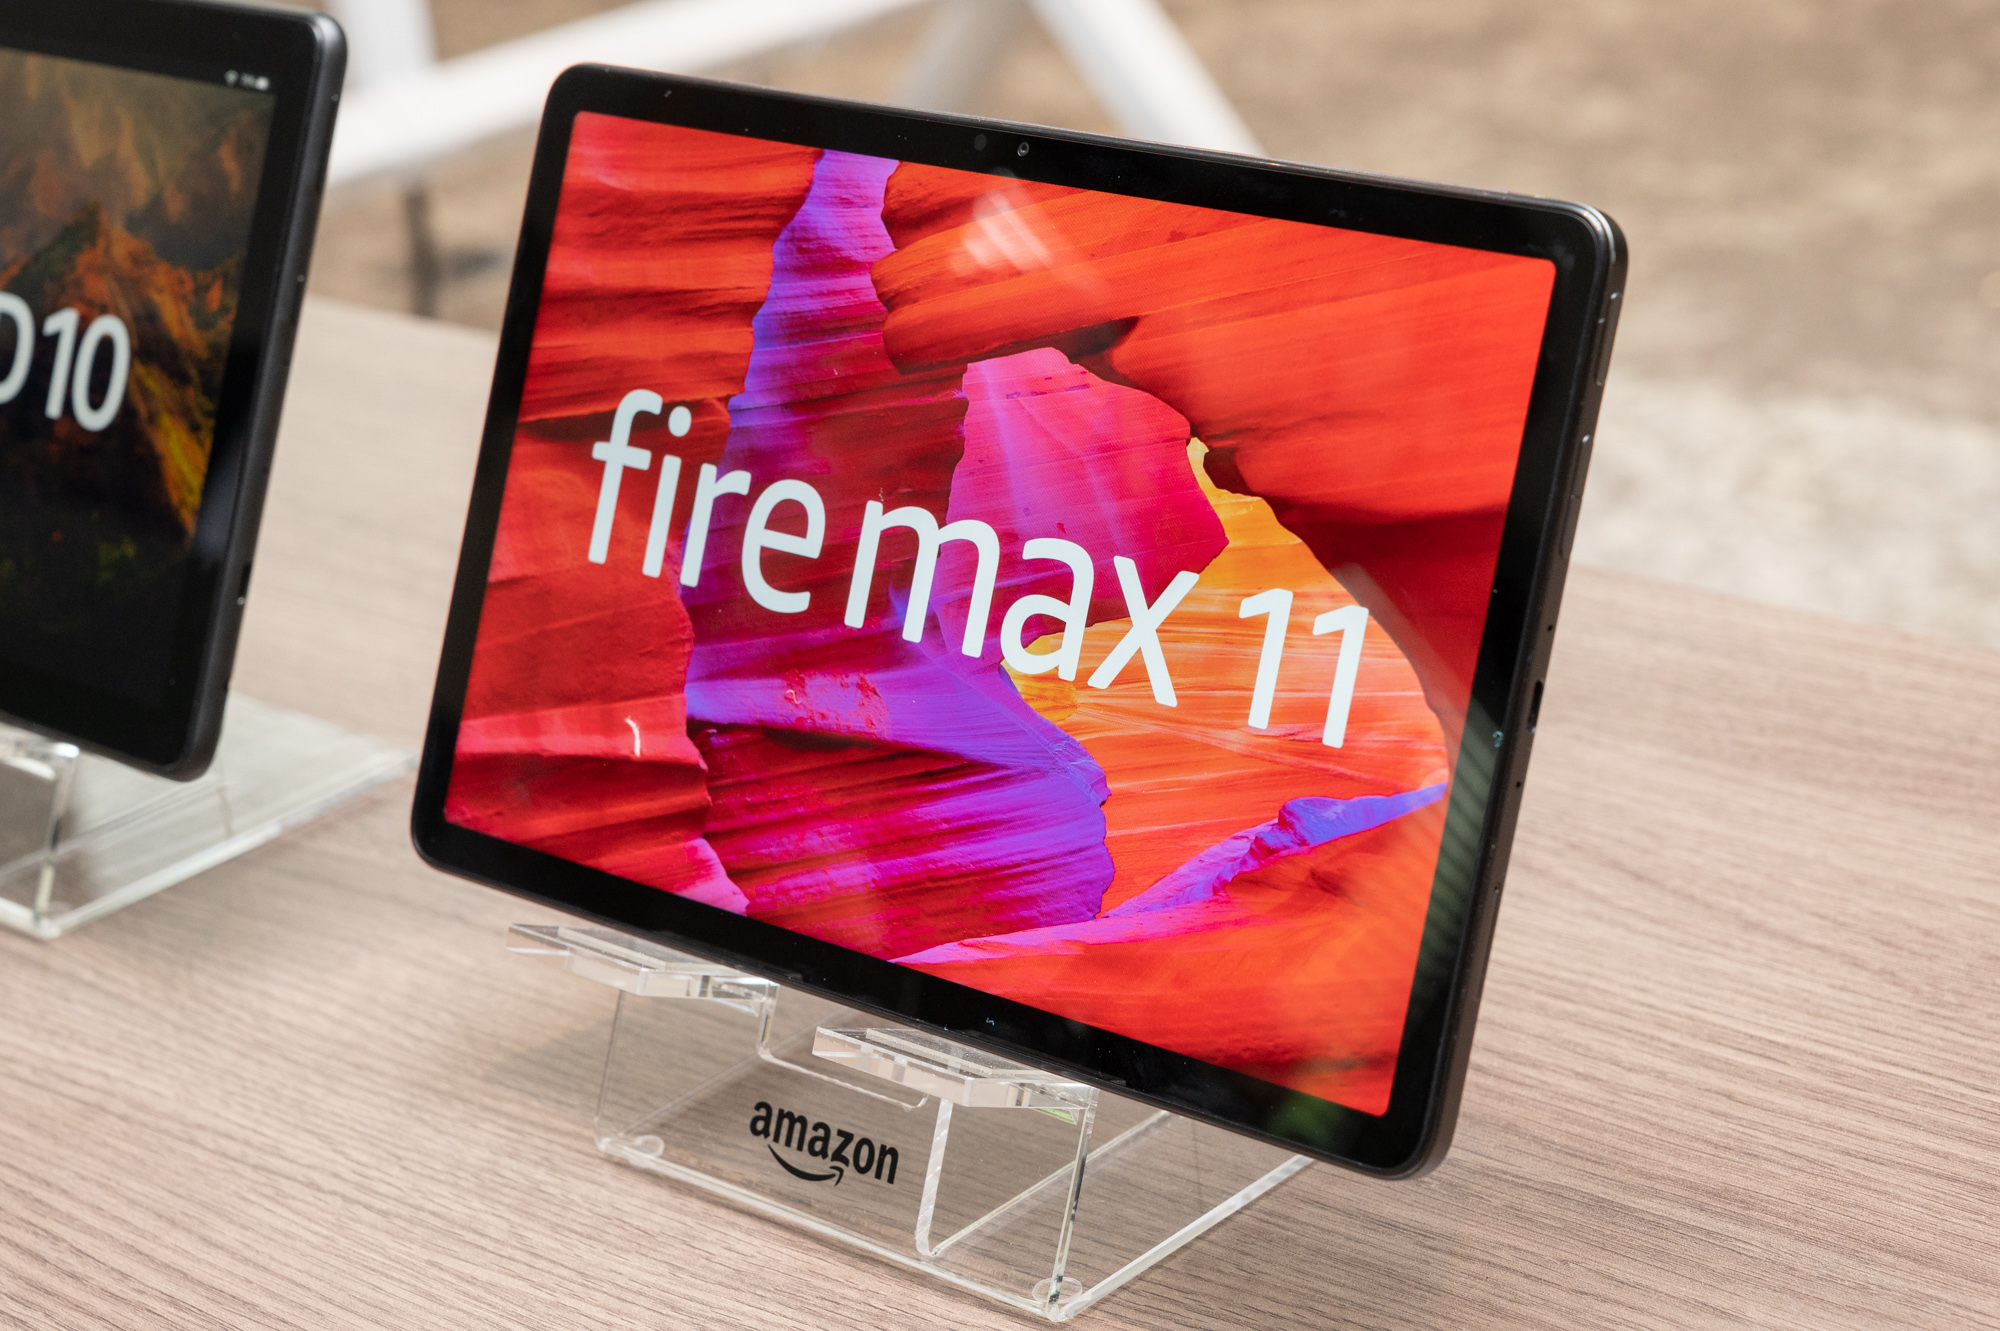 【新品未開封】Fire Max 11 Fireタブレット 64GB